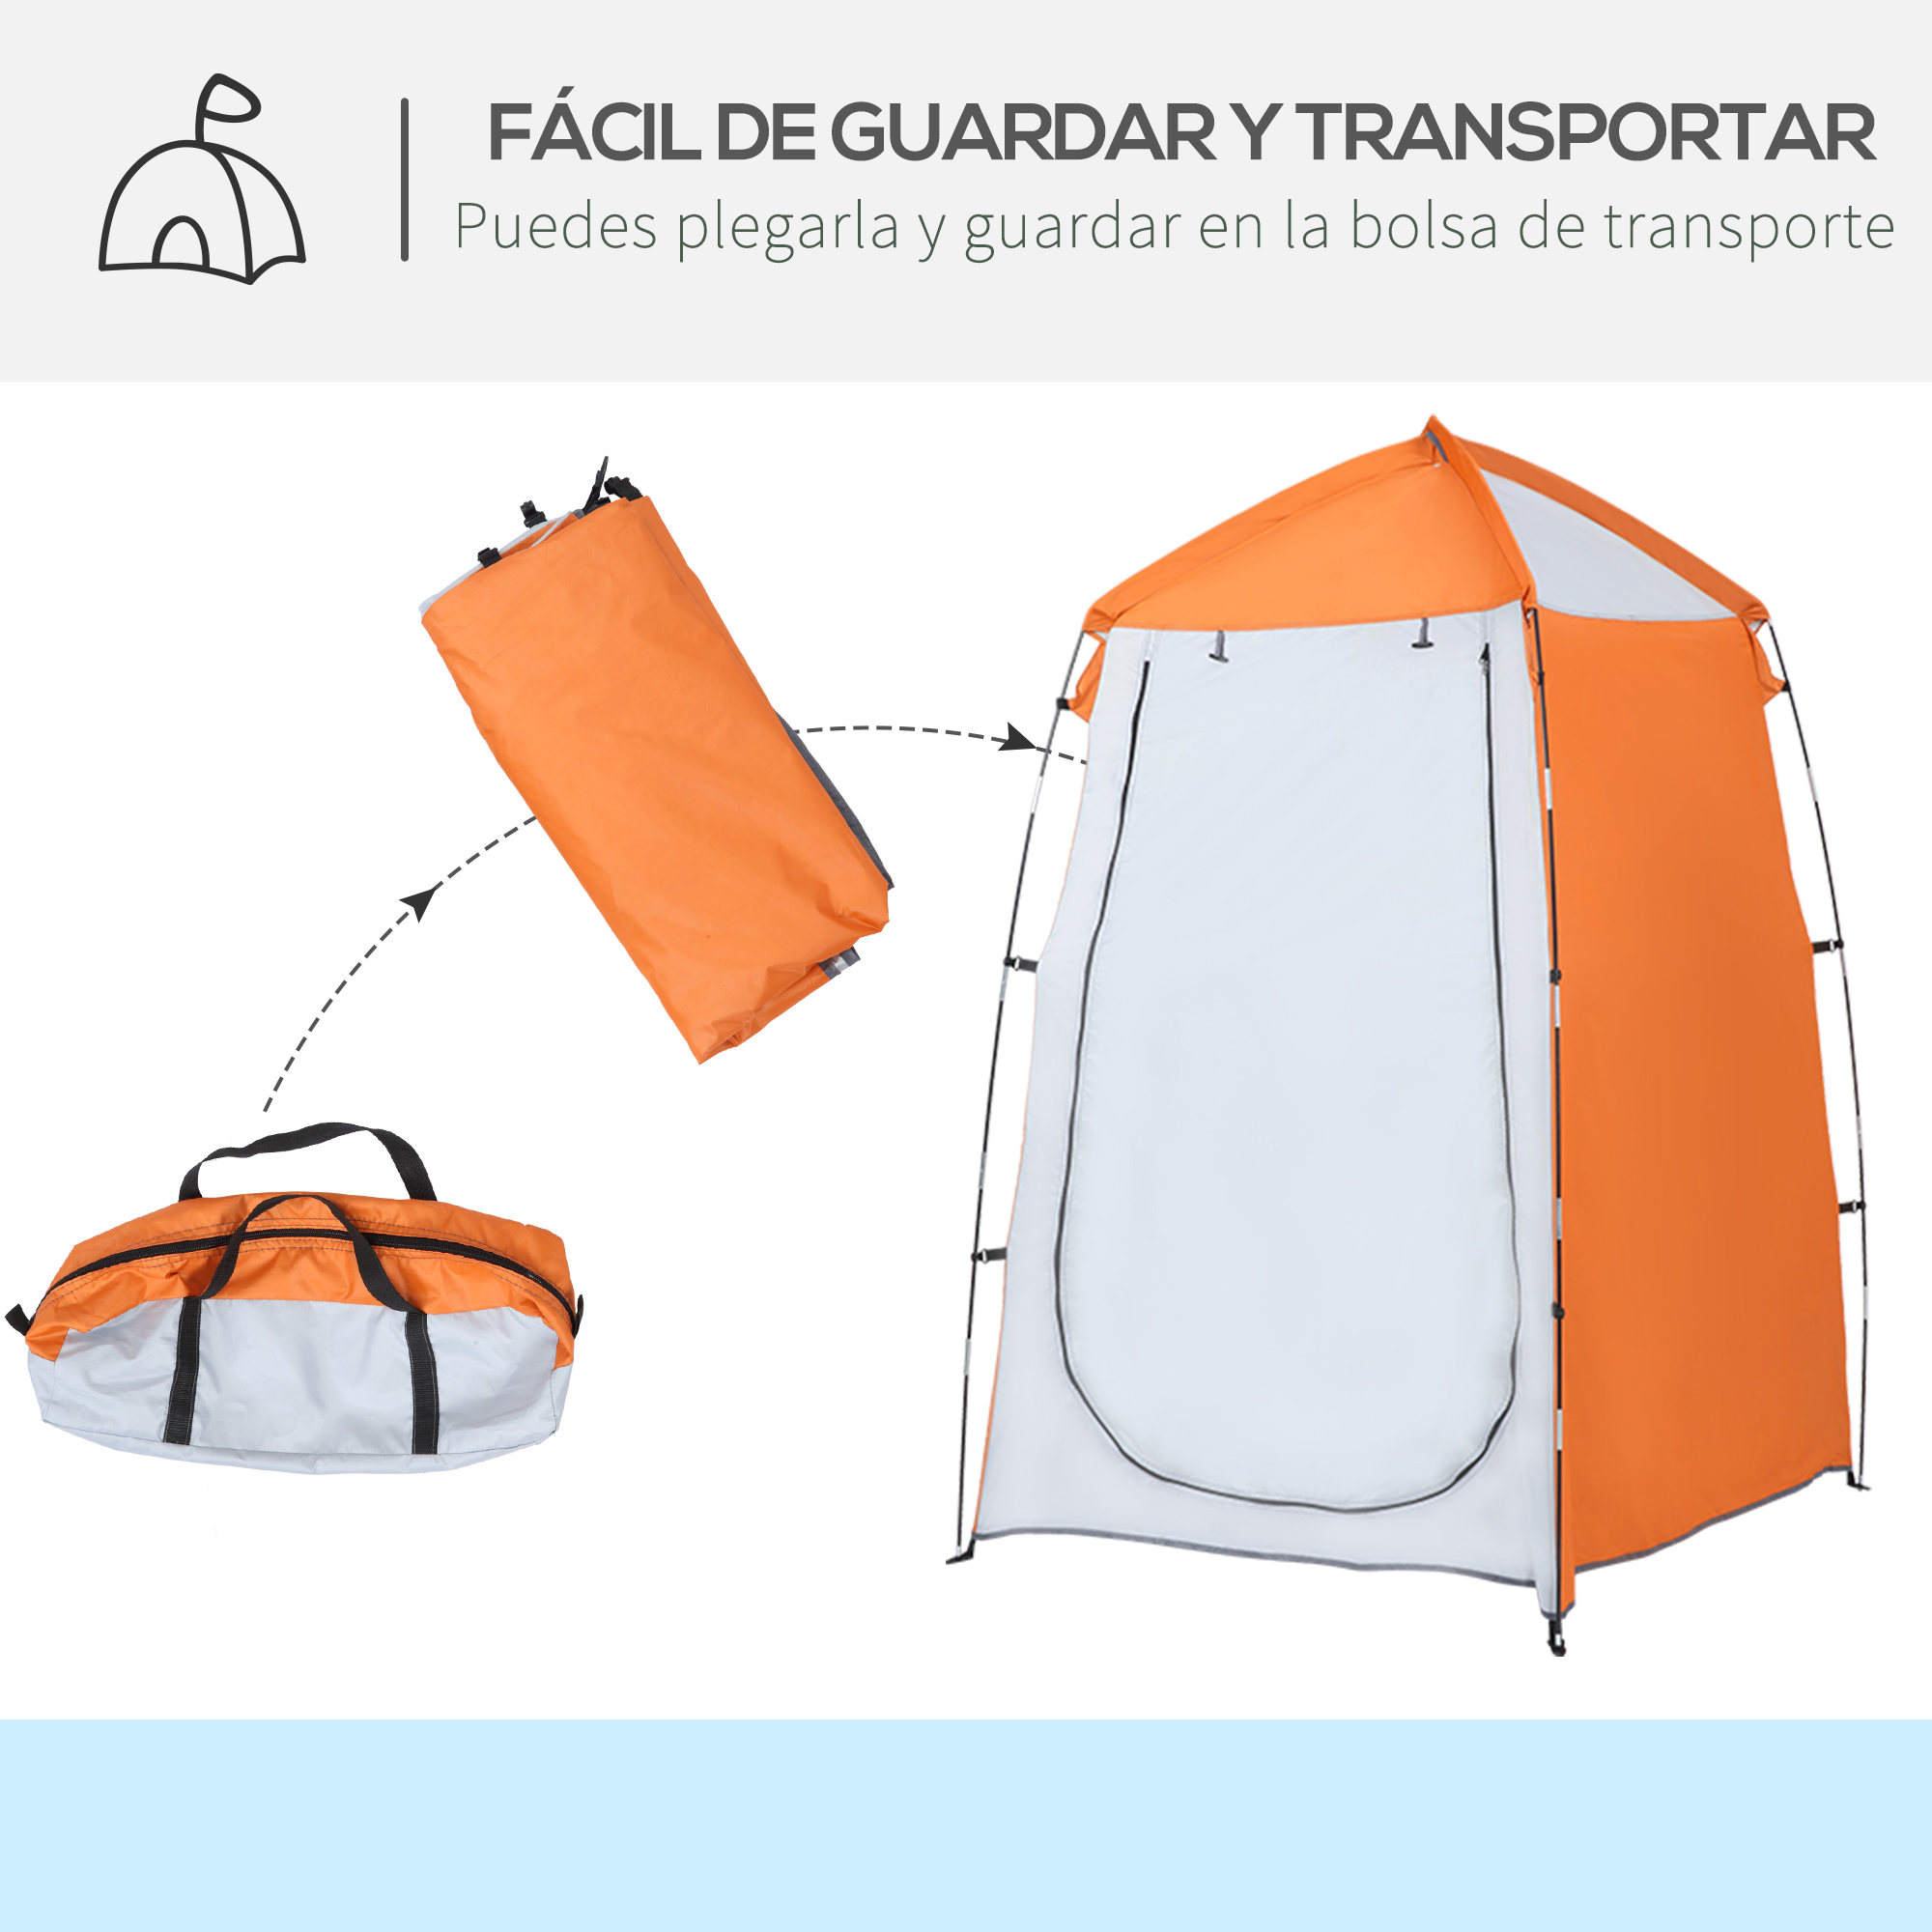 Tenda De Duche Outsunny A20-257